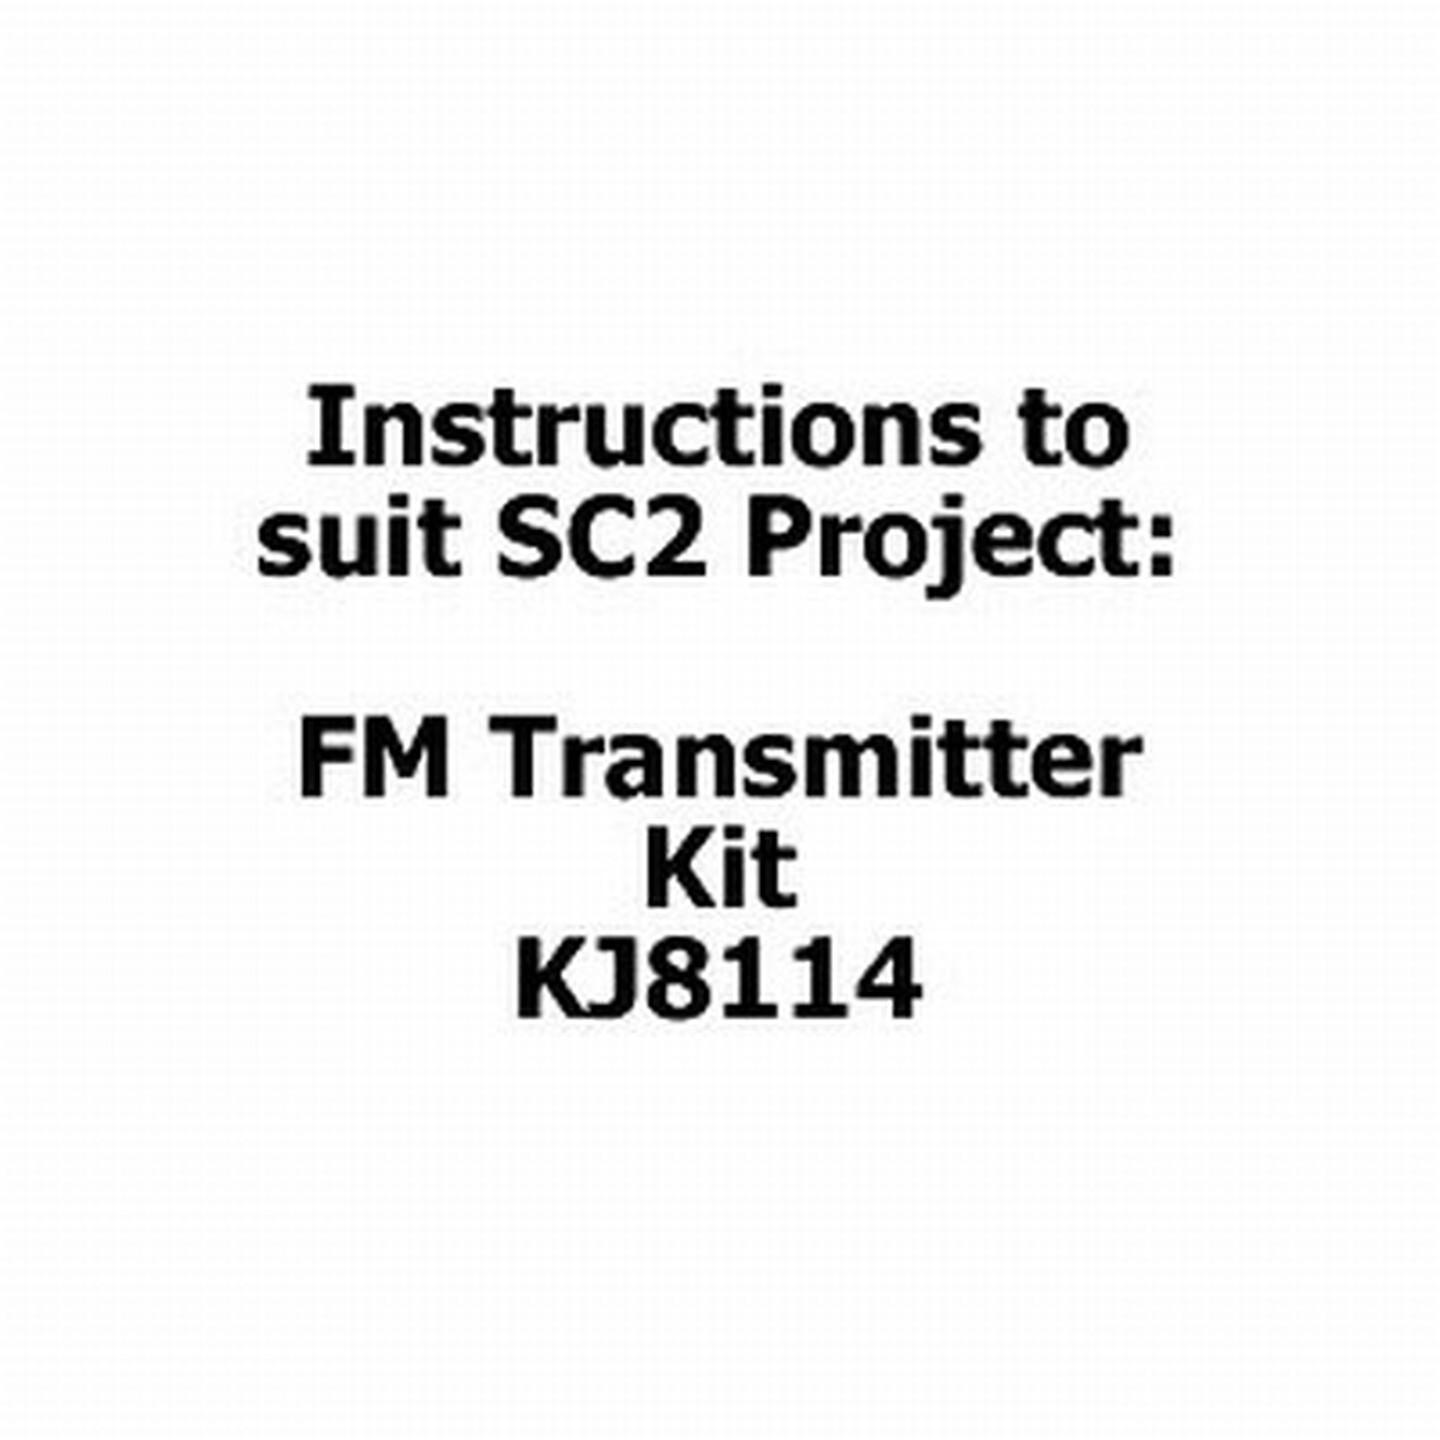 Instructions for Mini-mitter FM Transmitter Kit - KJ8114